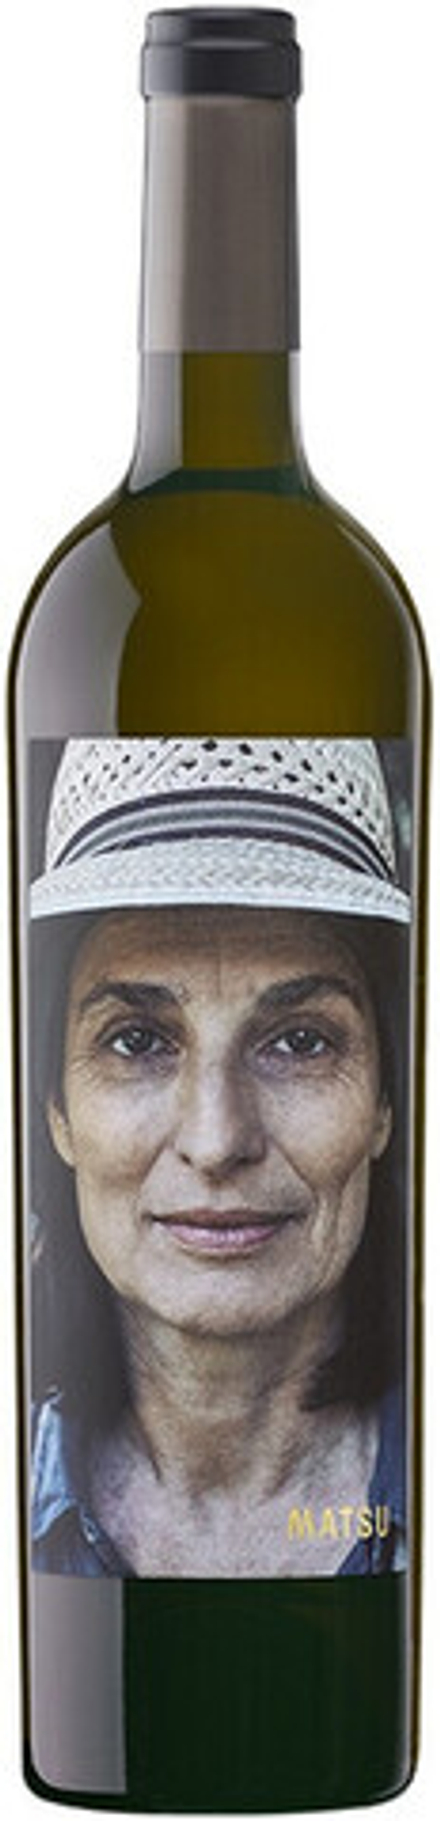 Вино Matsu La Jefa Toro DO, 0,75 л.